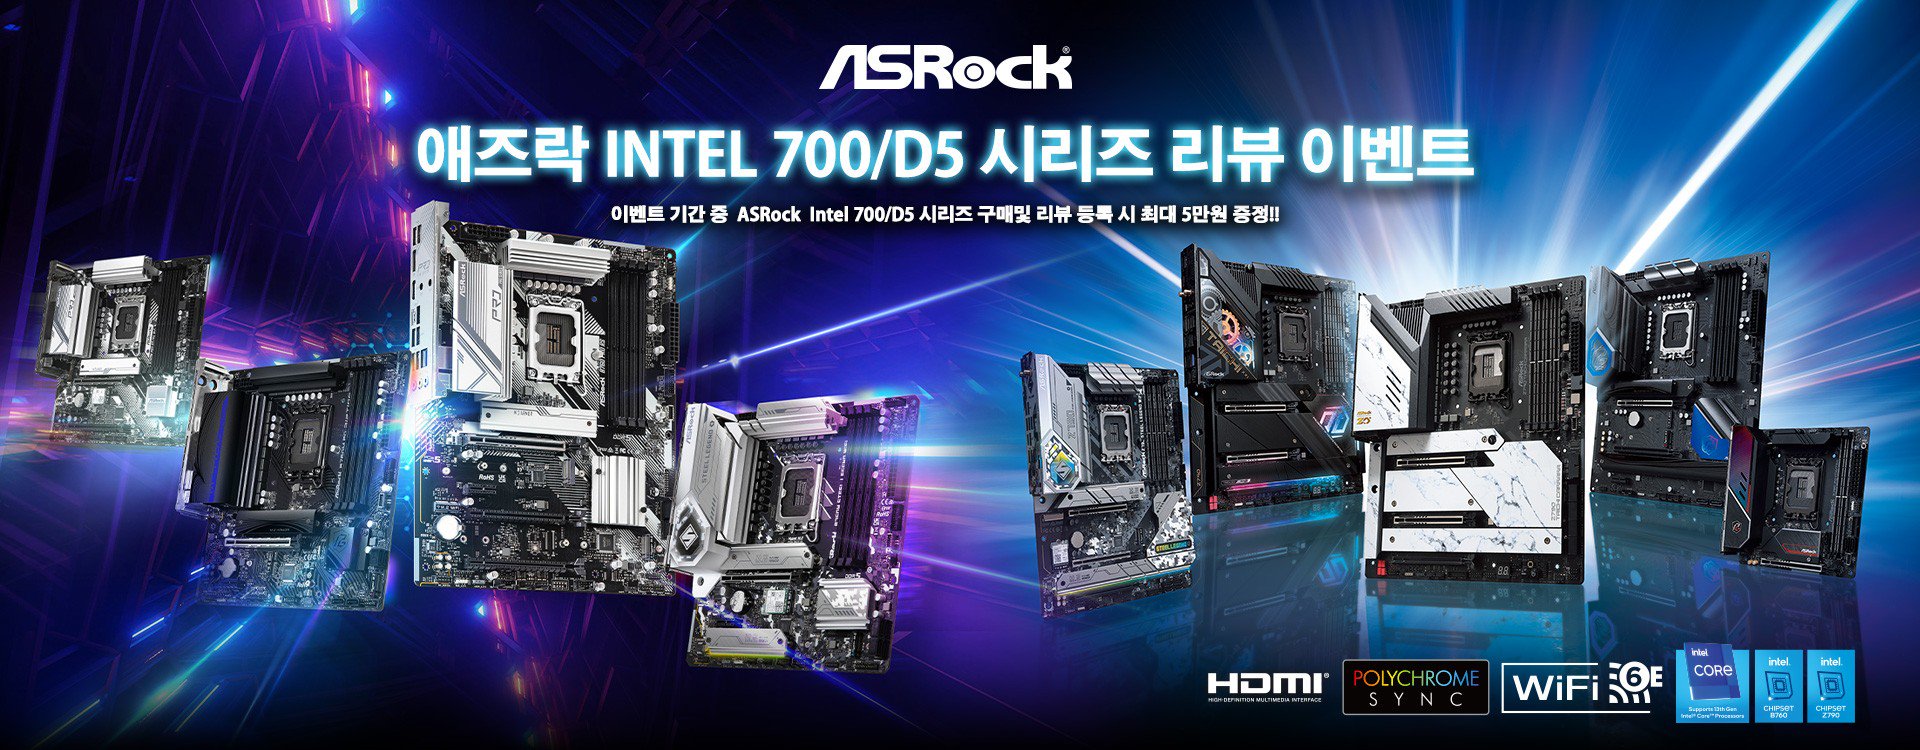 애즈락 Intel 700/D5 시리즈 리뷰 이벤트